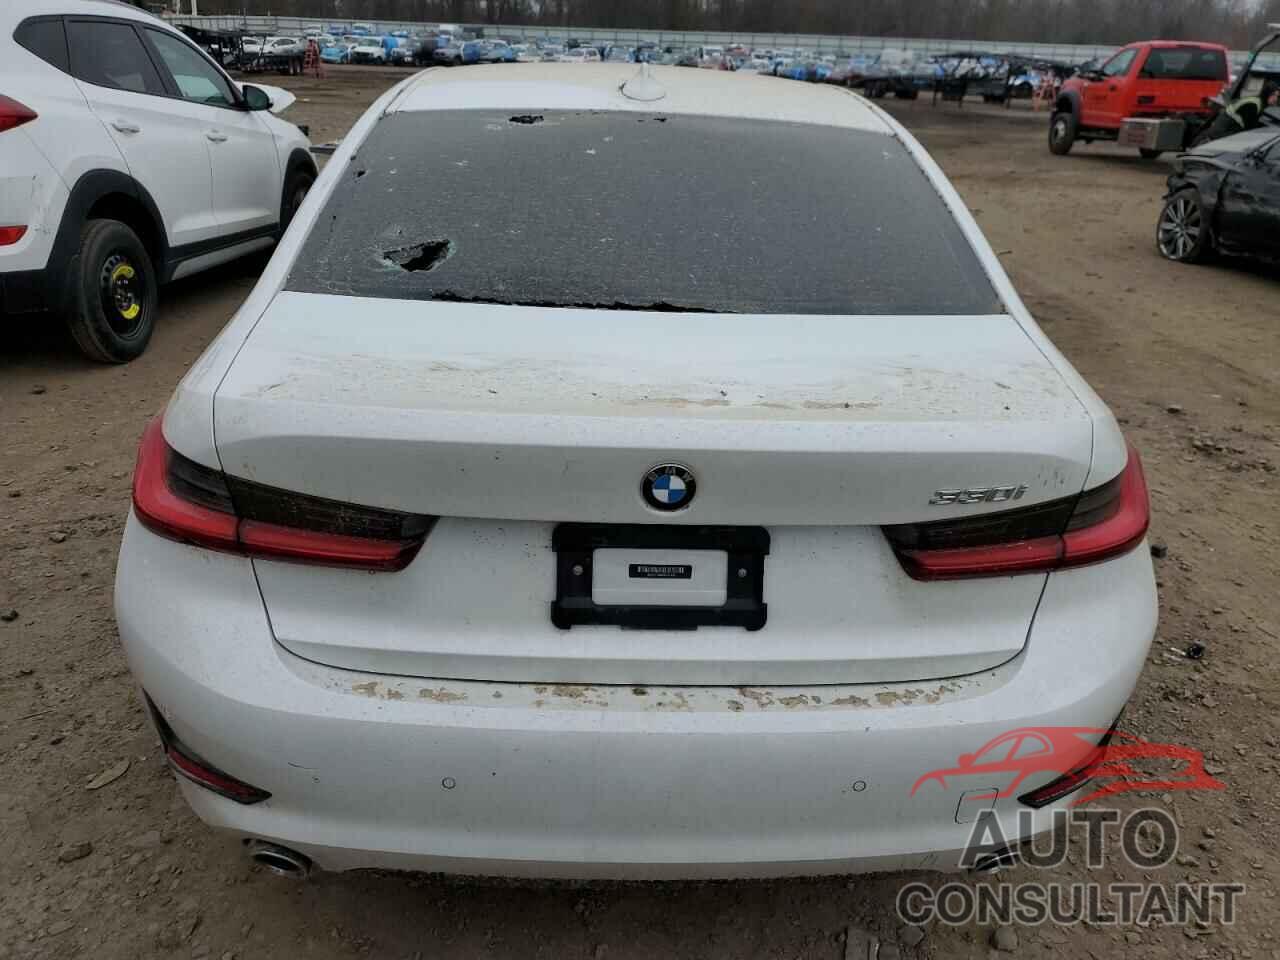 BMW 3 SERIES 2021 - 3MW5R1J05M8C19335